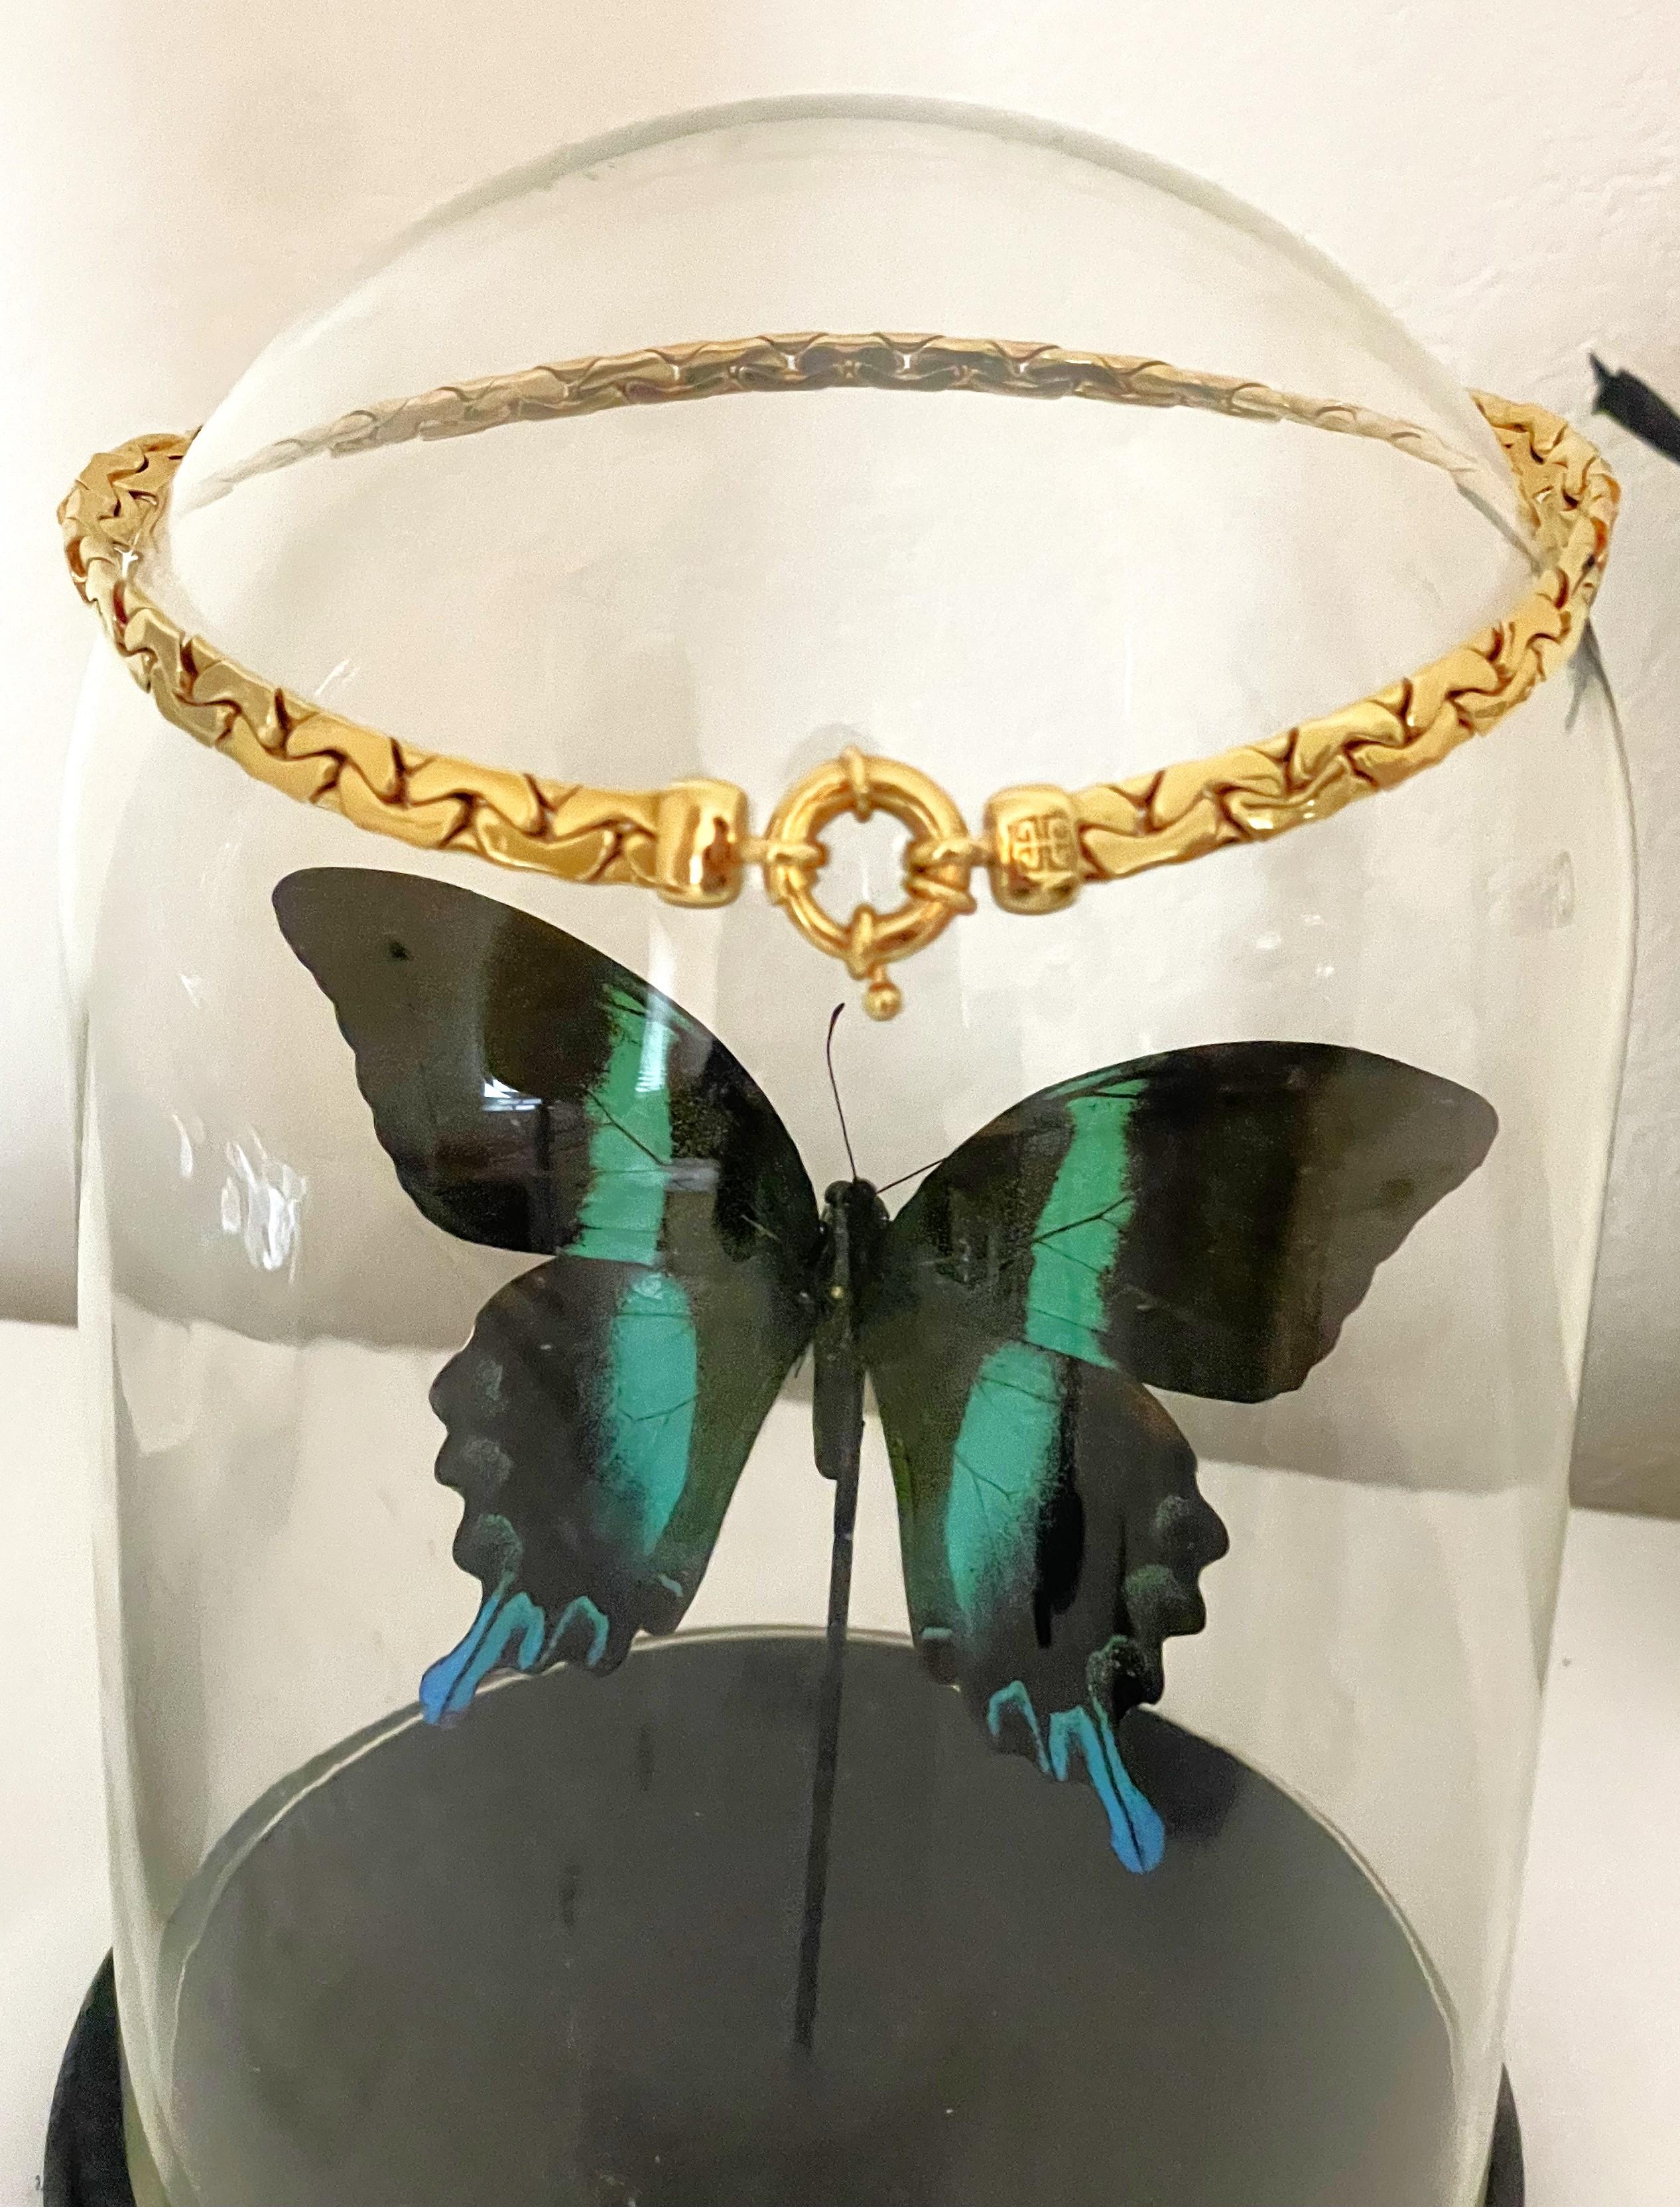 Le collier en chaîne de serpent tressé avec serrure en plaqué or de Givenchy est une véritable pièce d'apparat. Tout est dans les détails. Le plaquage or ajoute une touche de luxe, et le design de la chaîne serpent tressée lui confère une touche